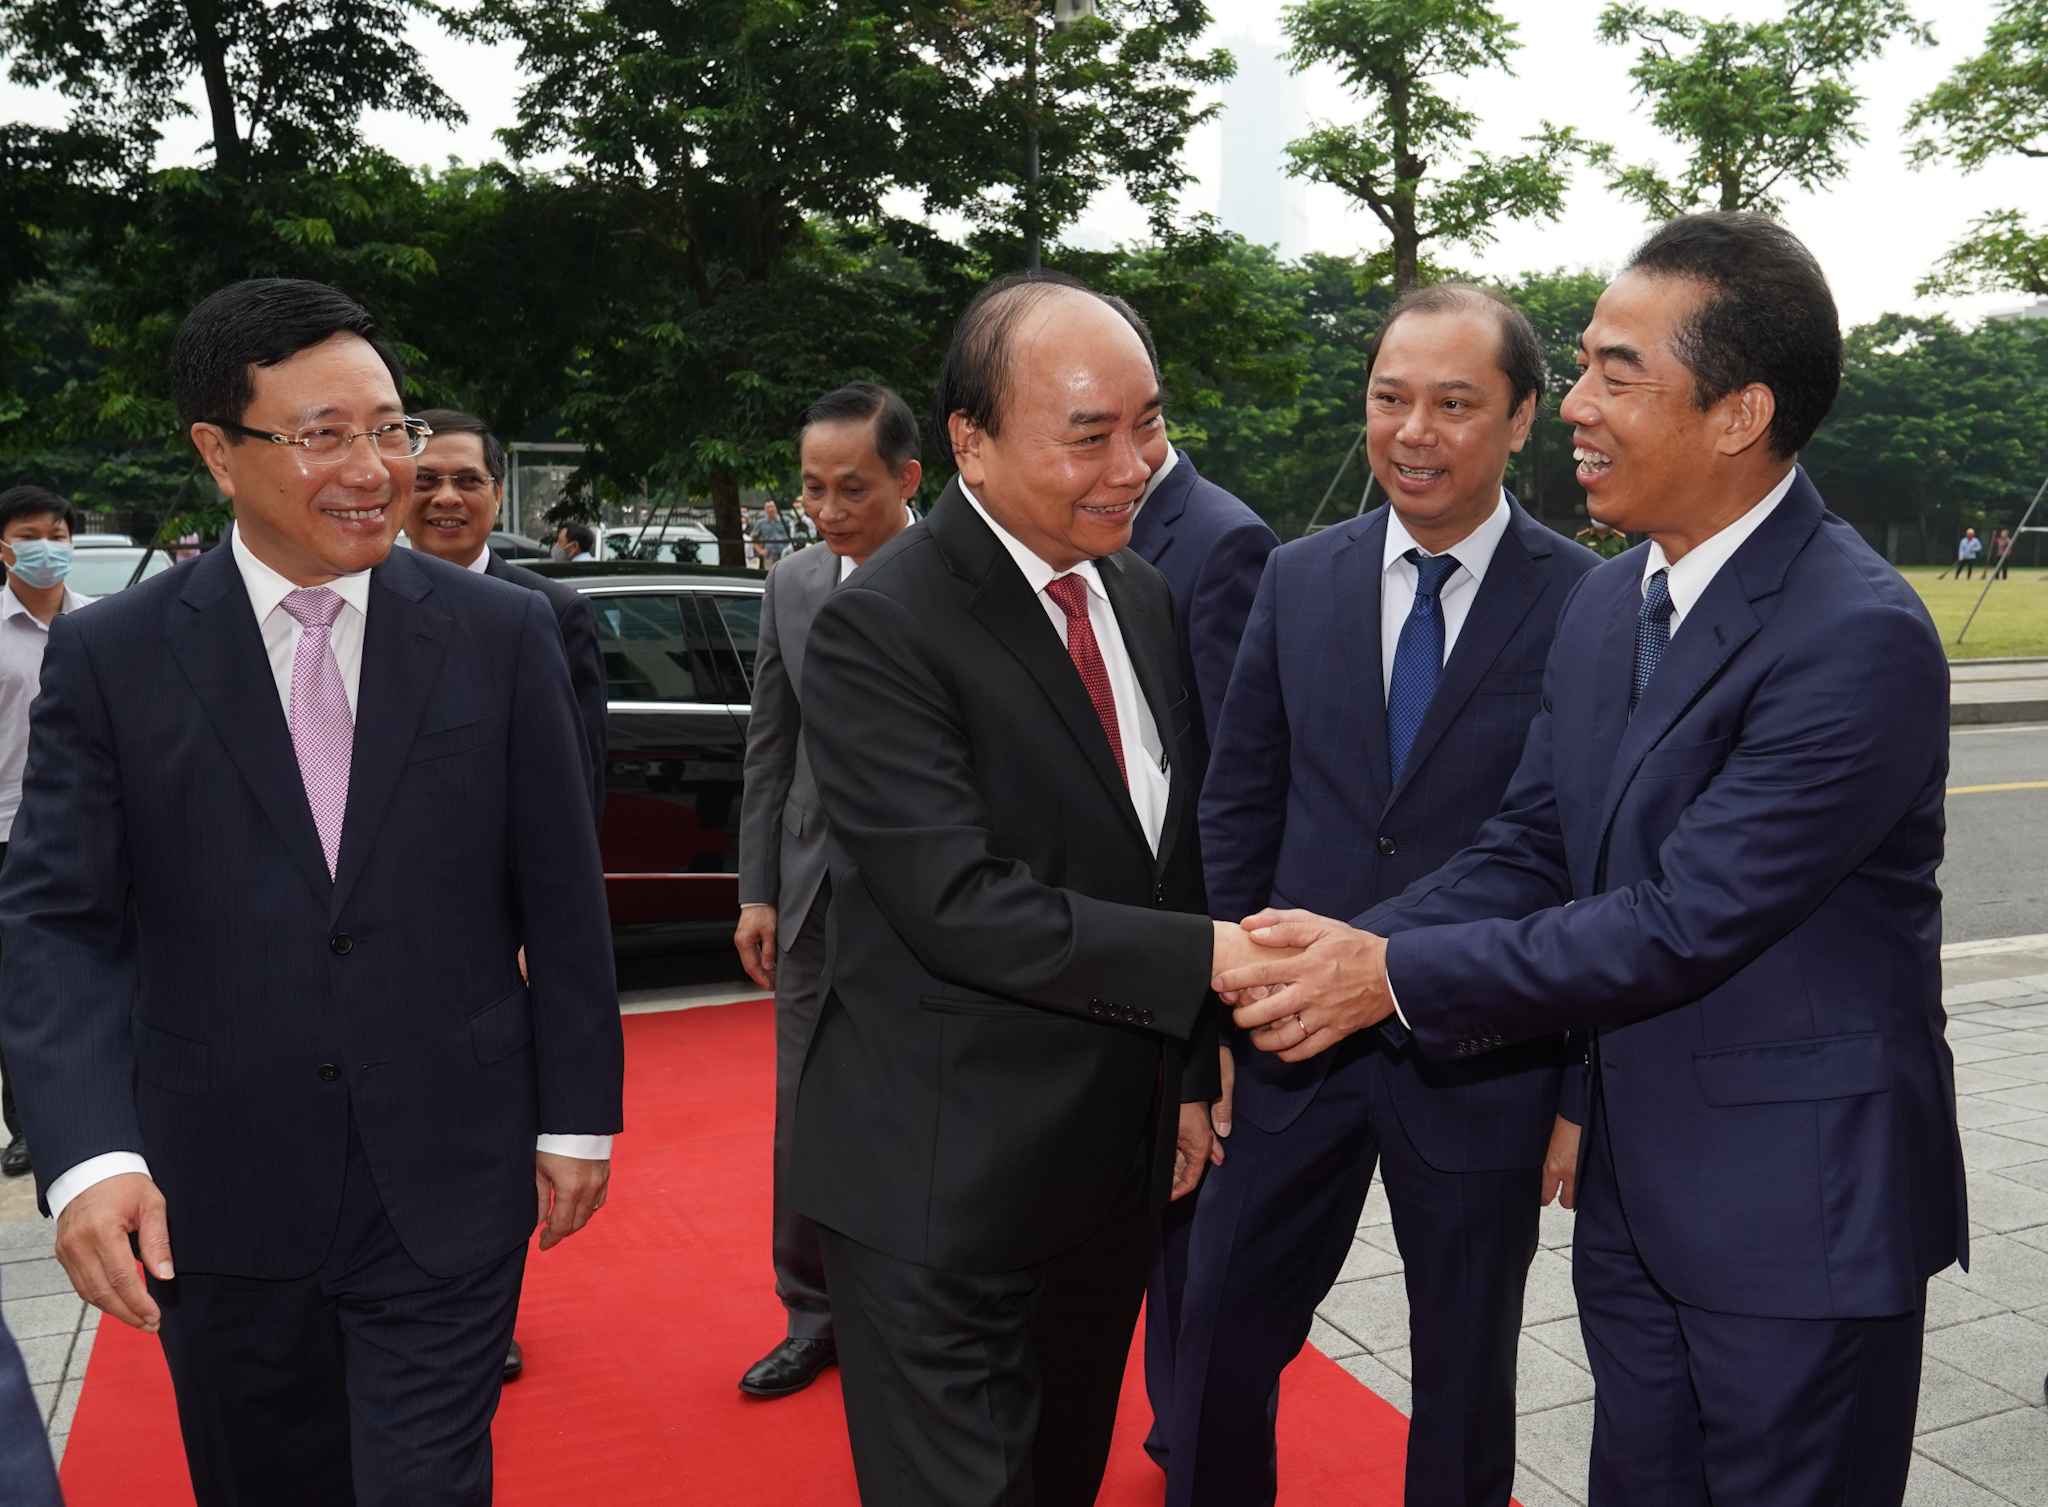 Thủ tướng dự kỷ niệm 75 năm thành lập ngành ngoại giao Việt Nam